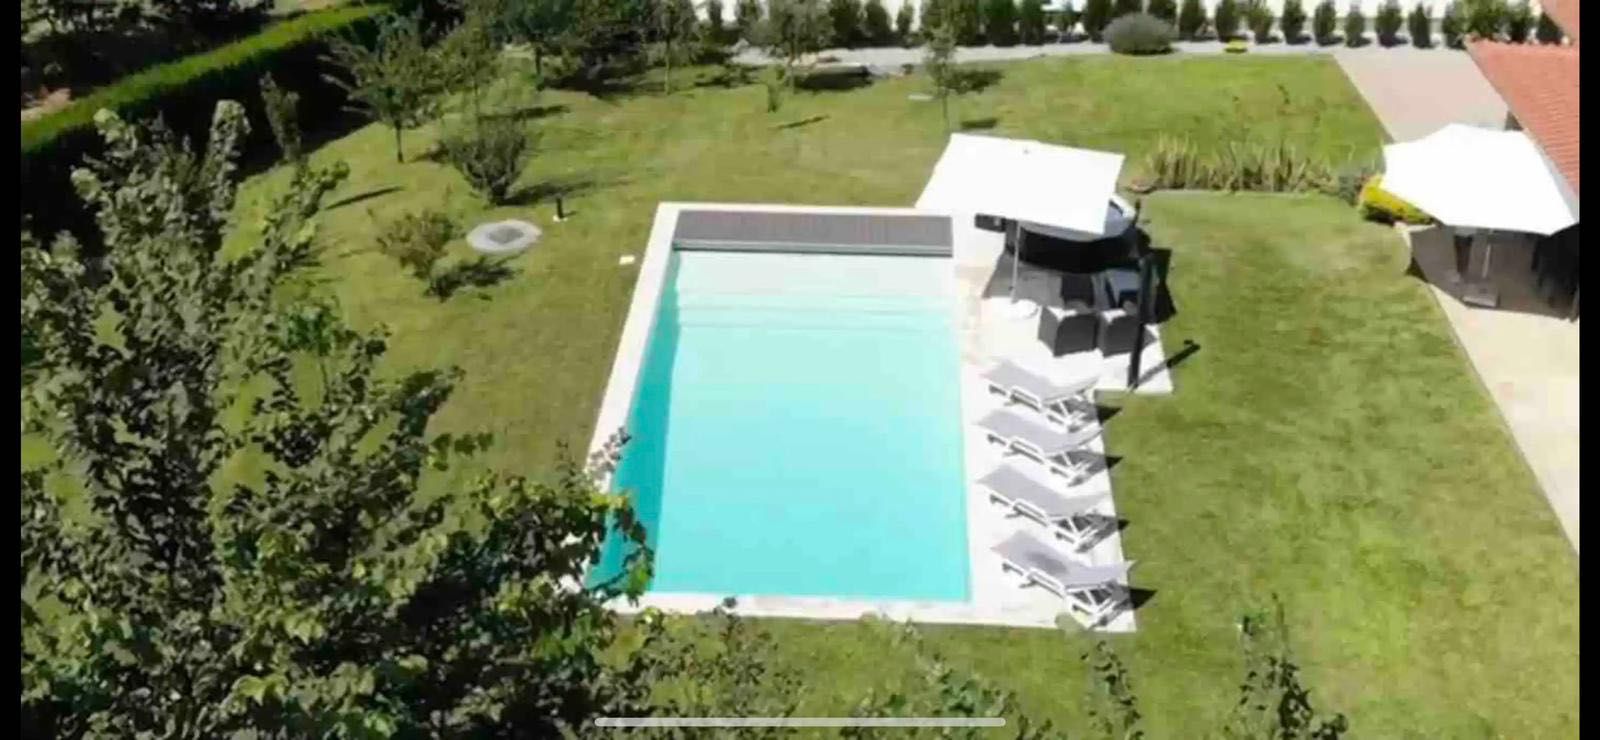 Casa de férias fim-de-semana com piscina e jacuzzi Cabeceiras de Basto